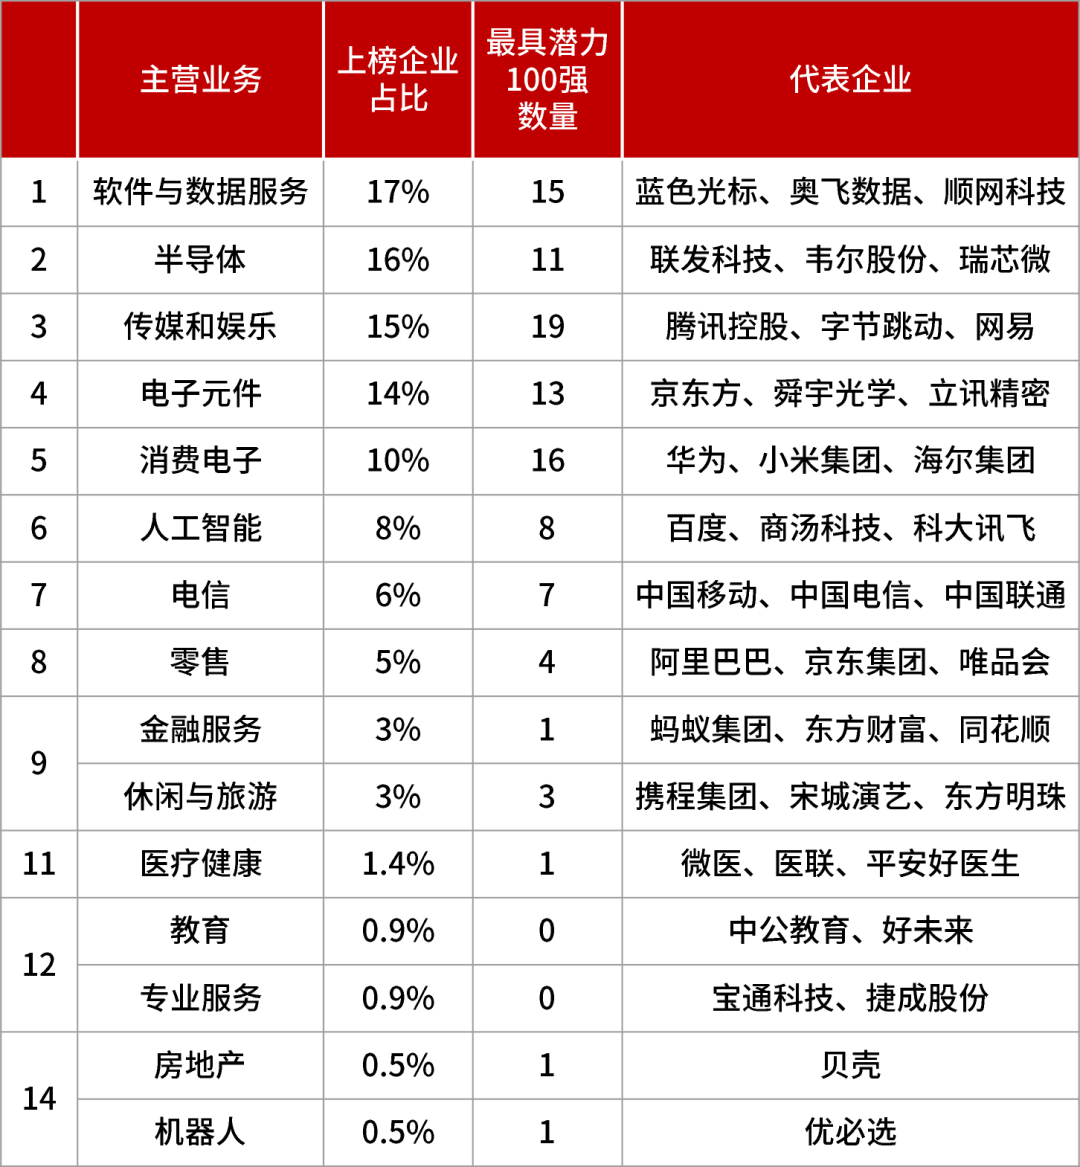 来源：《2022胡润中国元宇宙潜力企业榜》